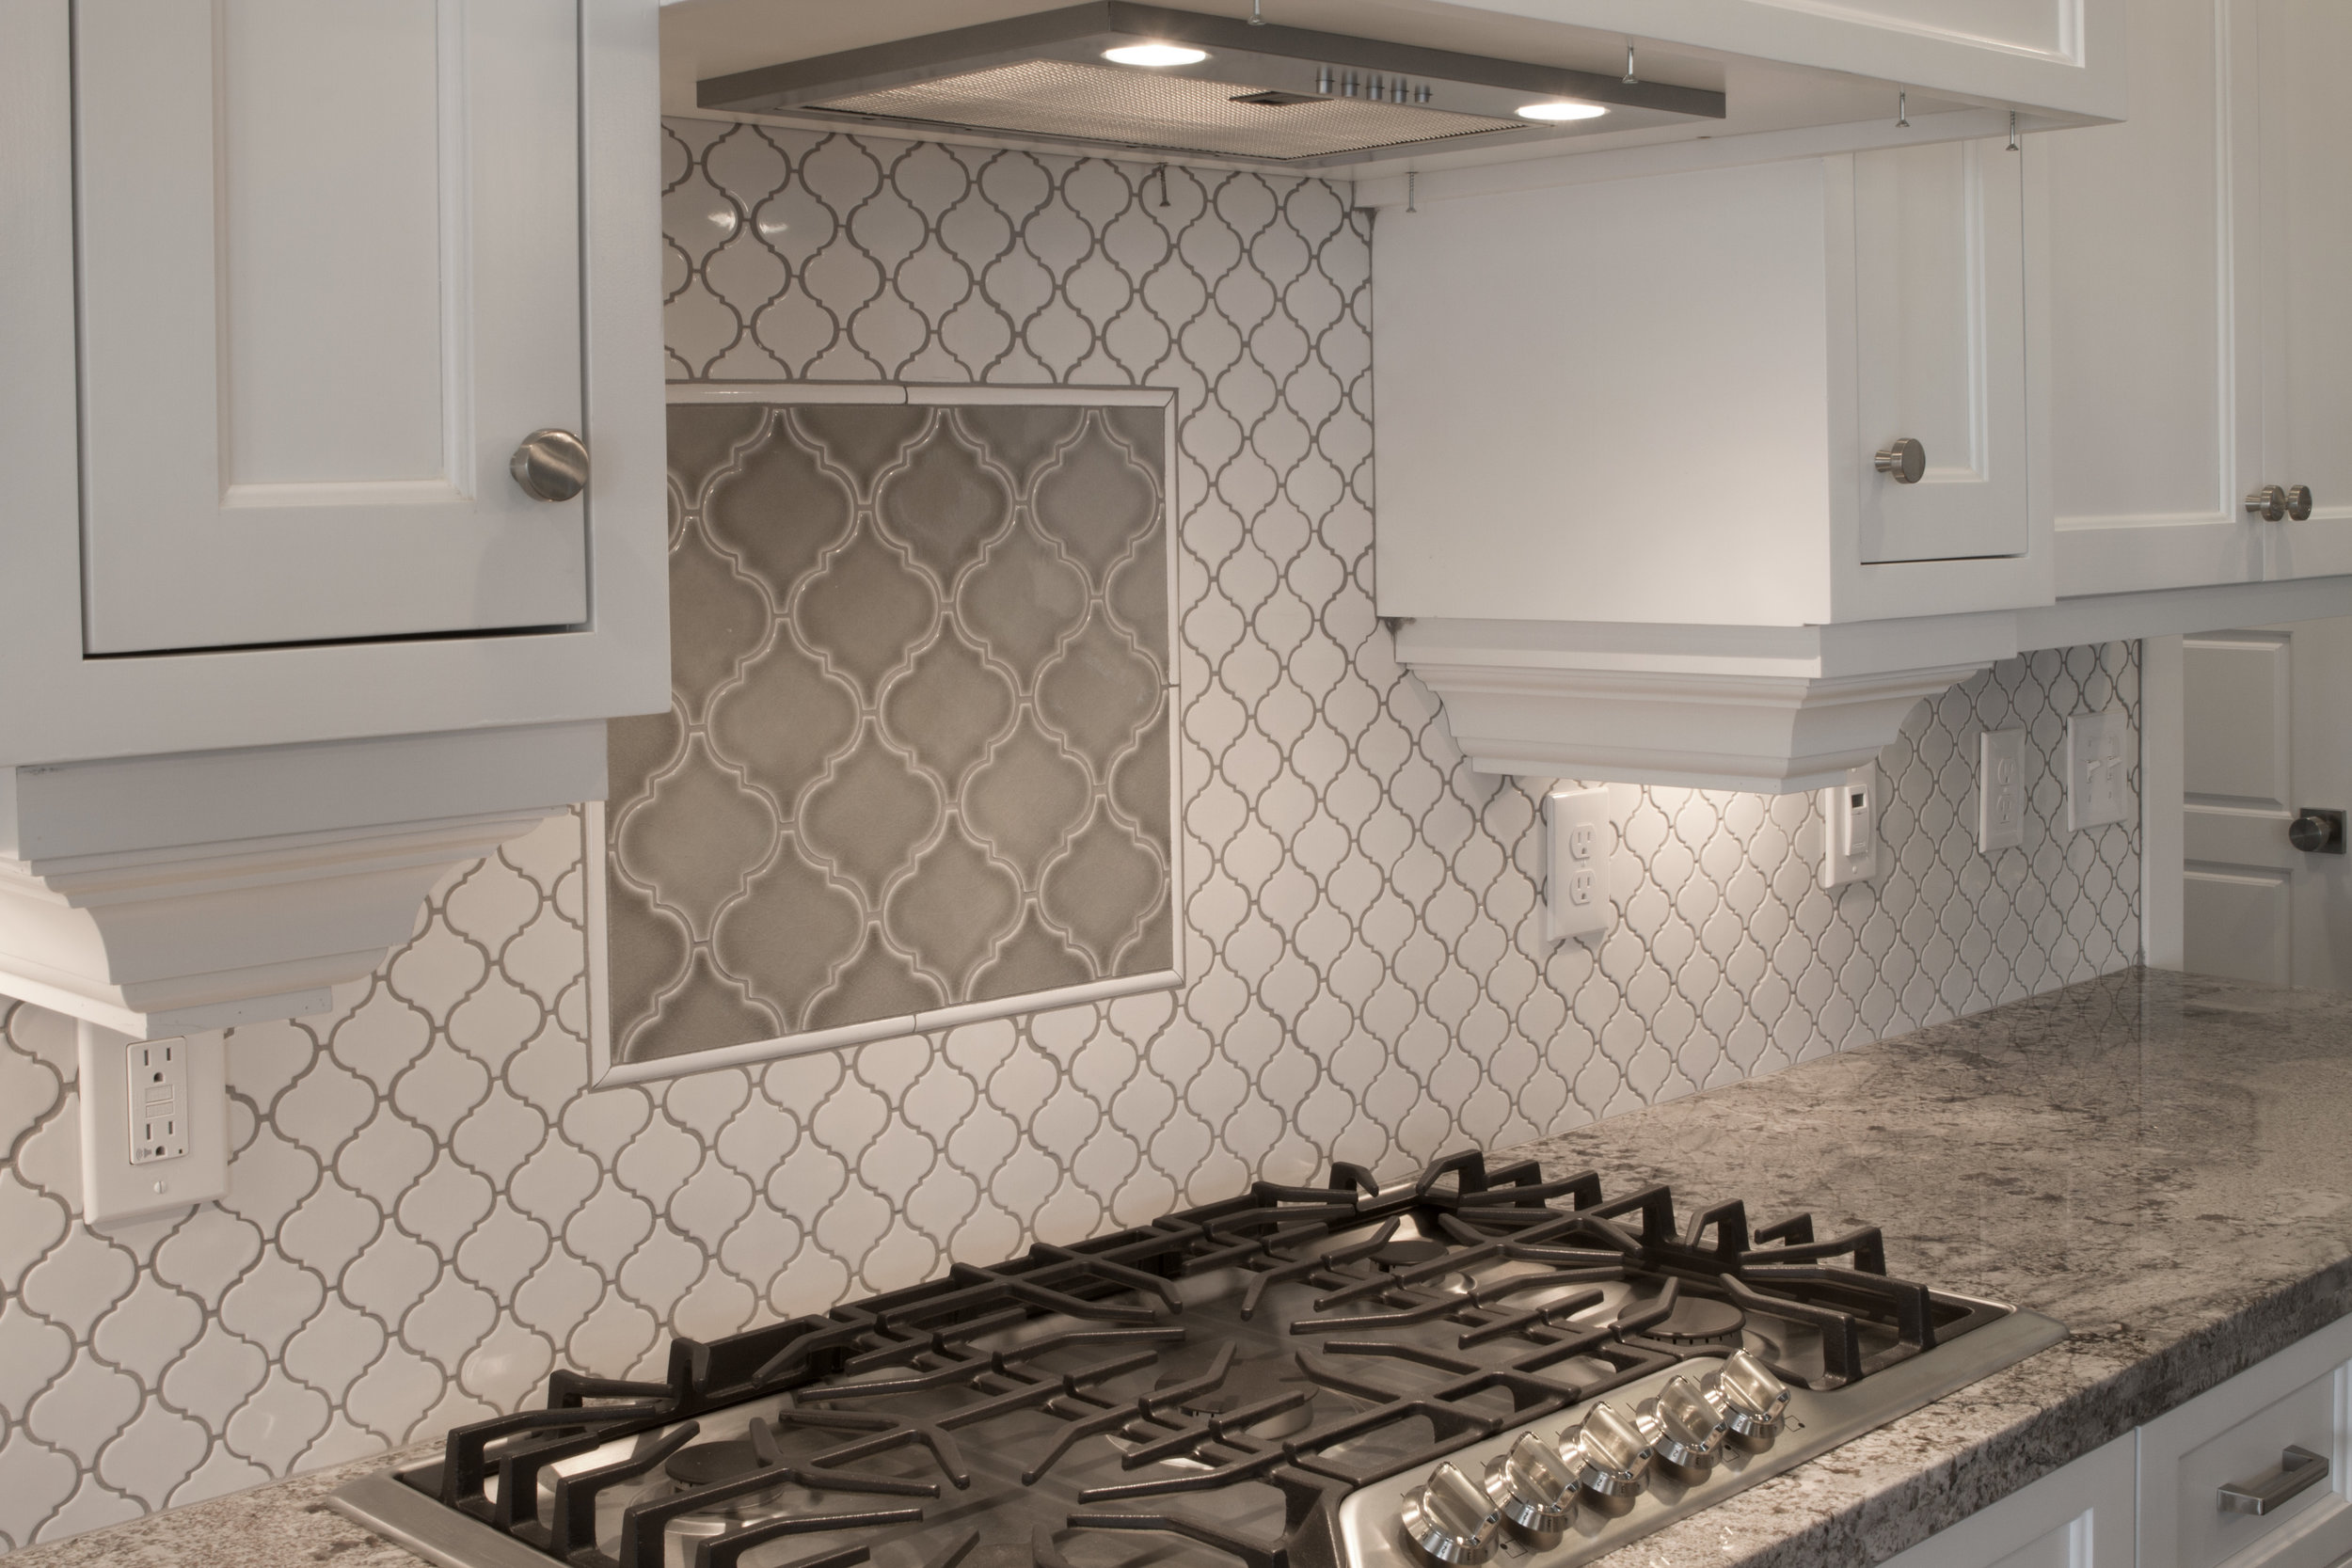 New Kitchen Bathroom Tile Backsplash, Installing Wall Tile Backsplash